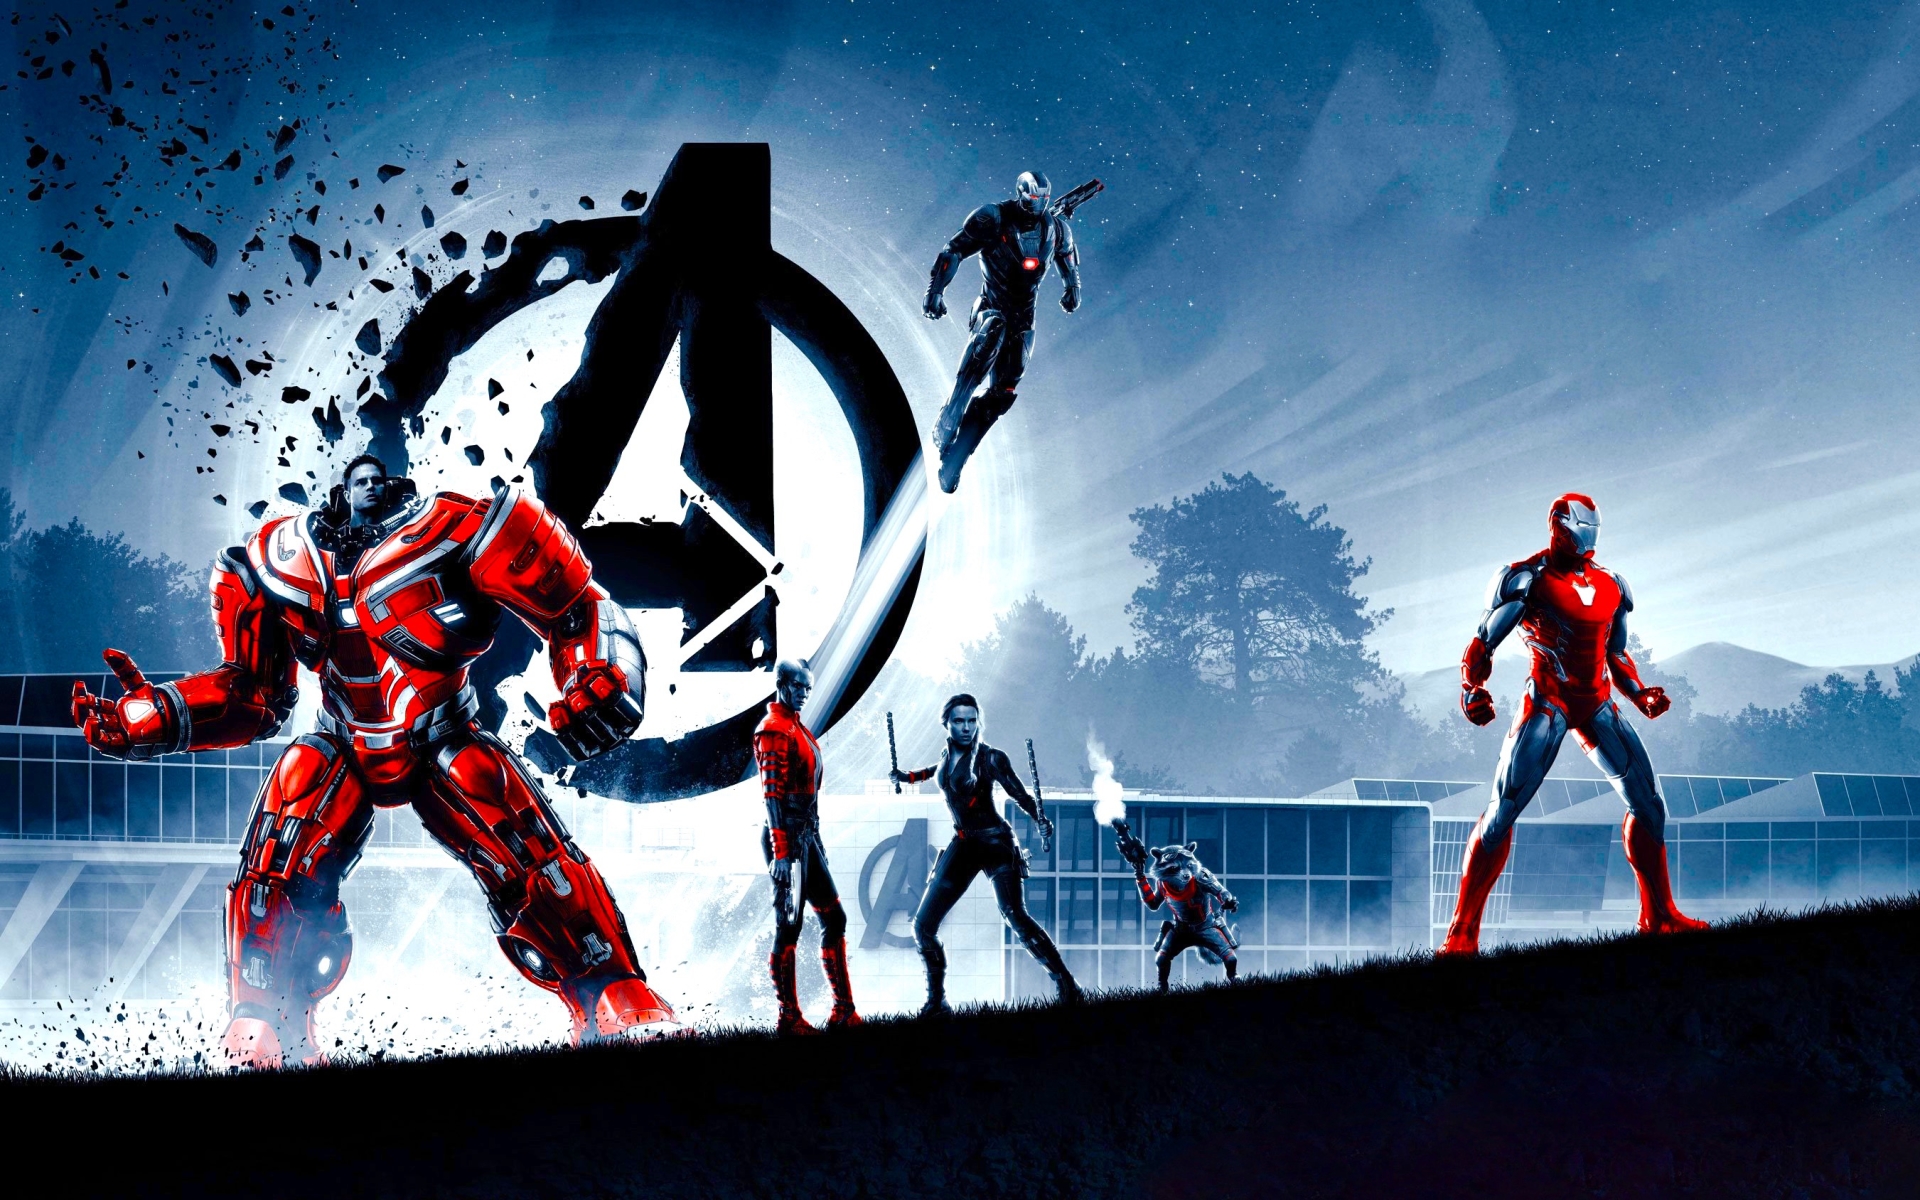 Avengers Endgame Wallpaper. HD Avengers Endgame Background